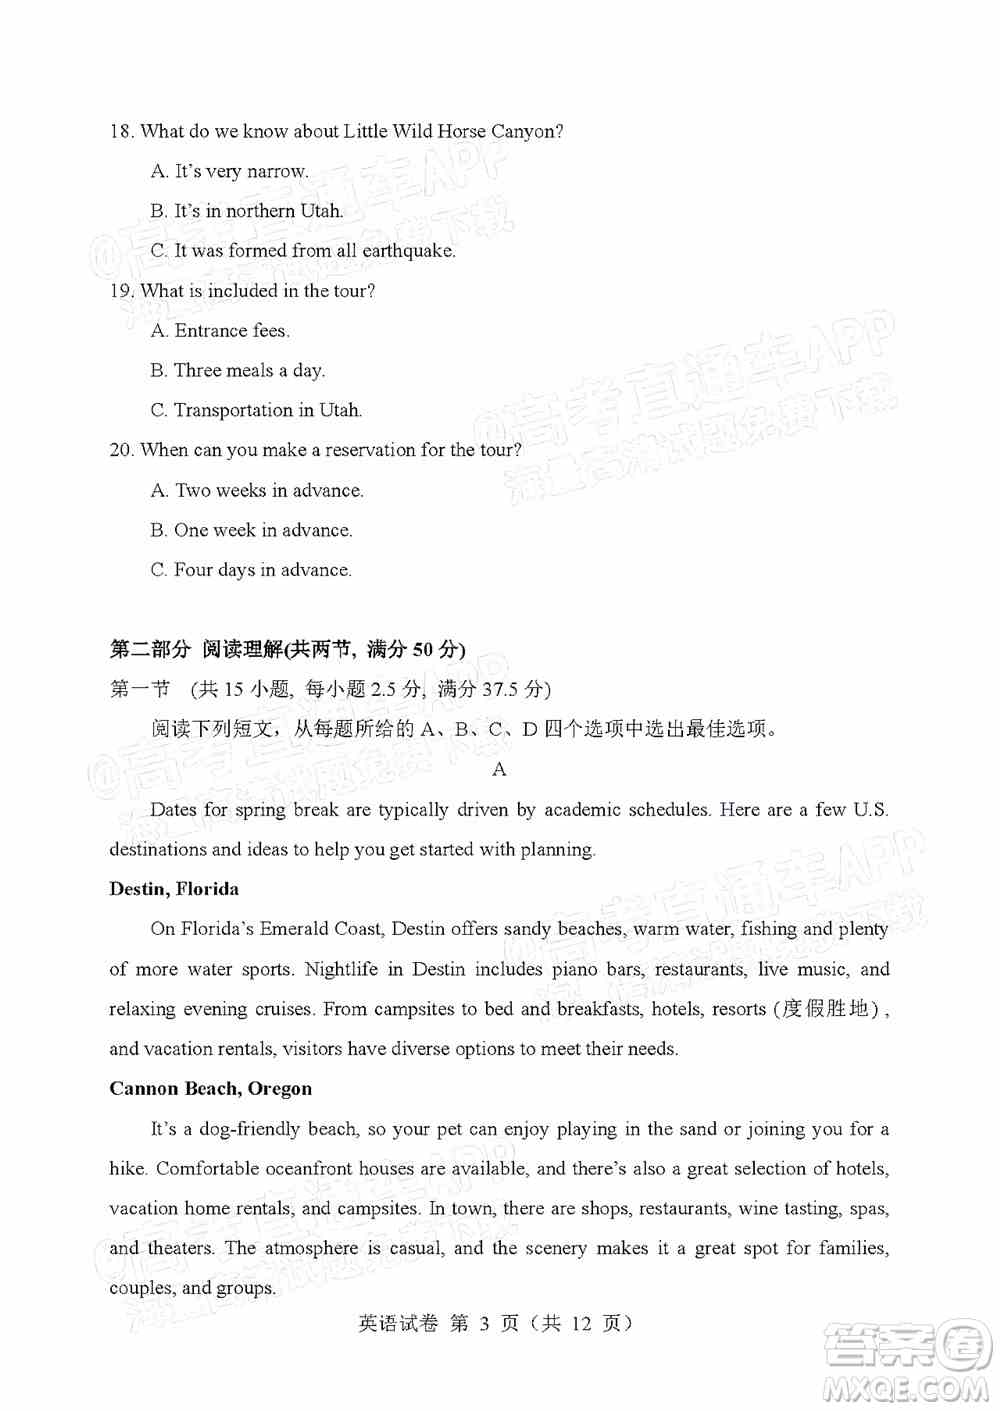 辽宁省部分重点中学协作体2022年模拟考试高三英语试题及答案